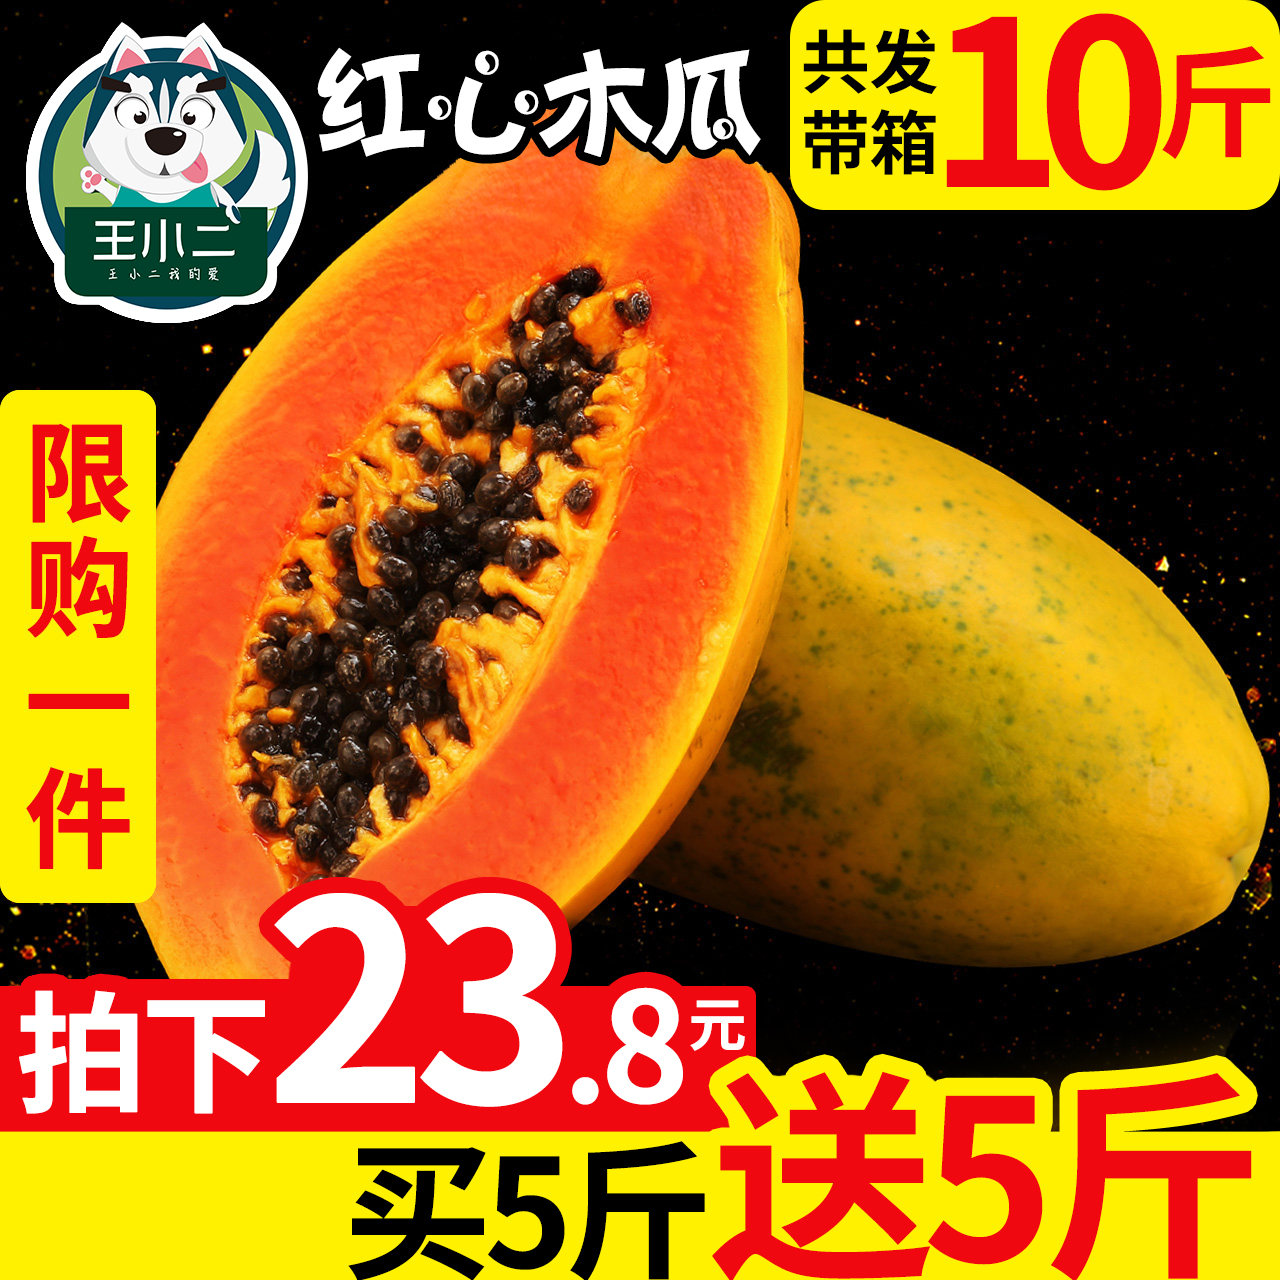 【买一送一】海南红心牛奶木瓜带箱10斤青木瓜新鲜水果包邮批发